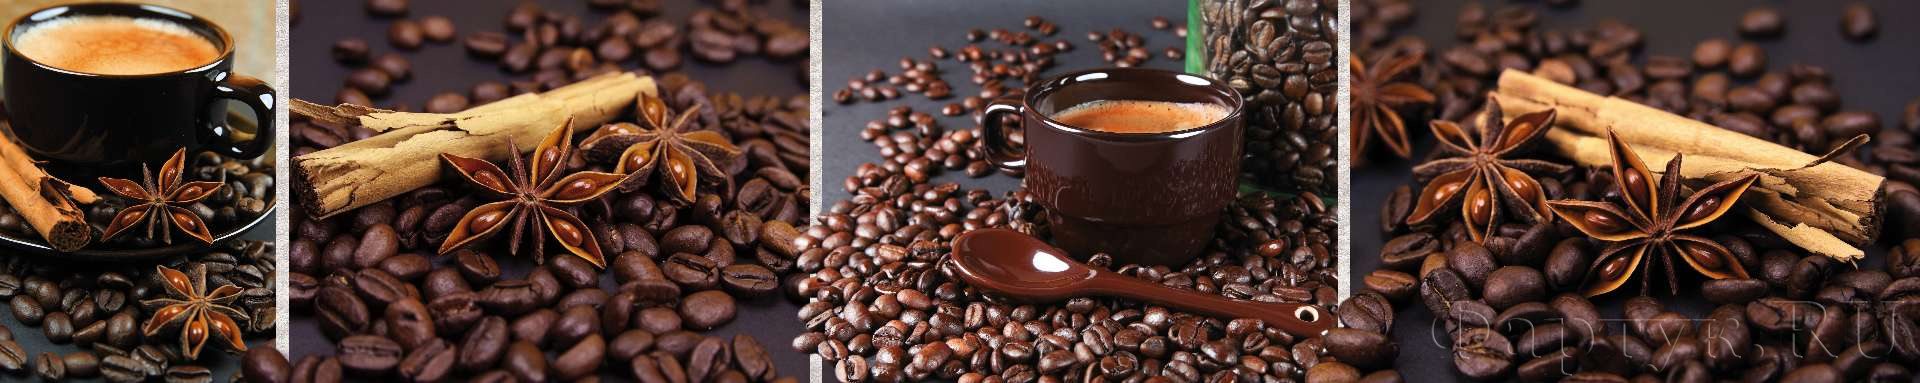 Чашки кофе и рассыпанные зерна